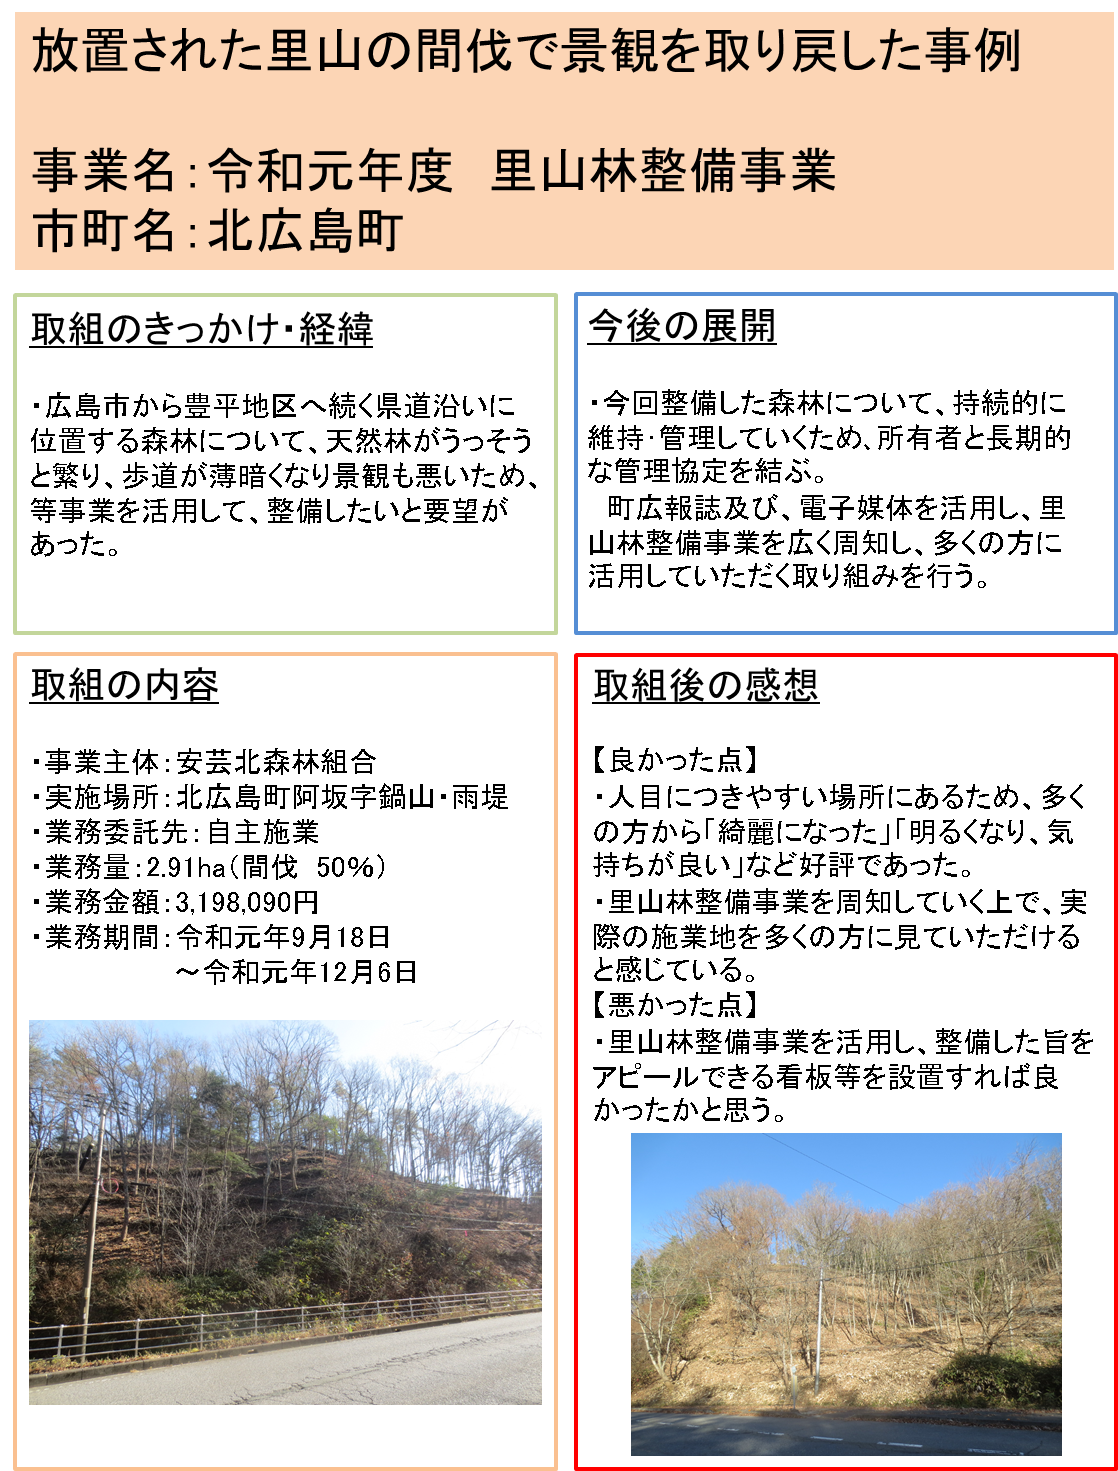 北広島町の森づくり活動事例